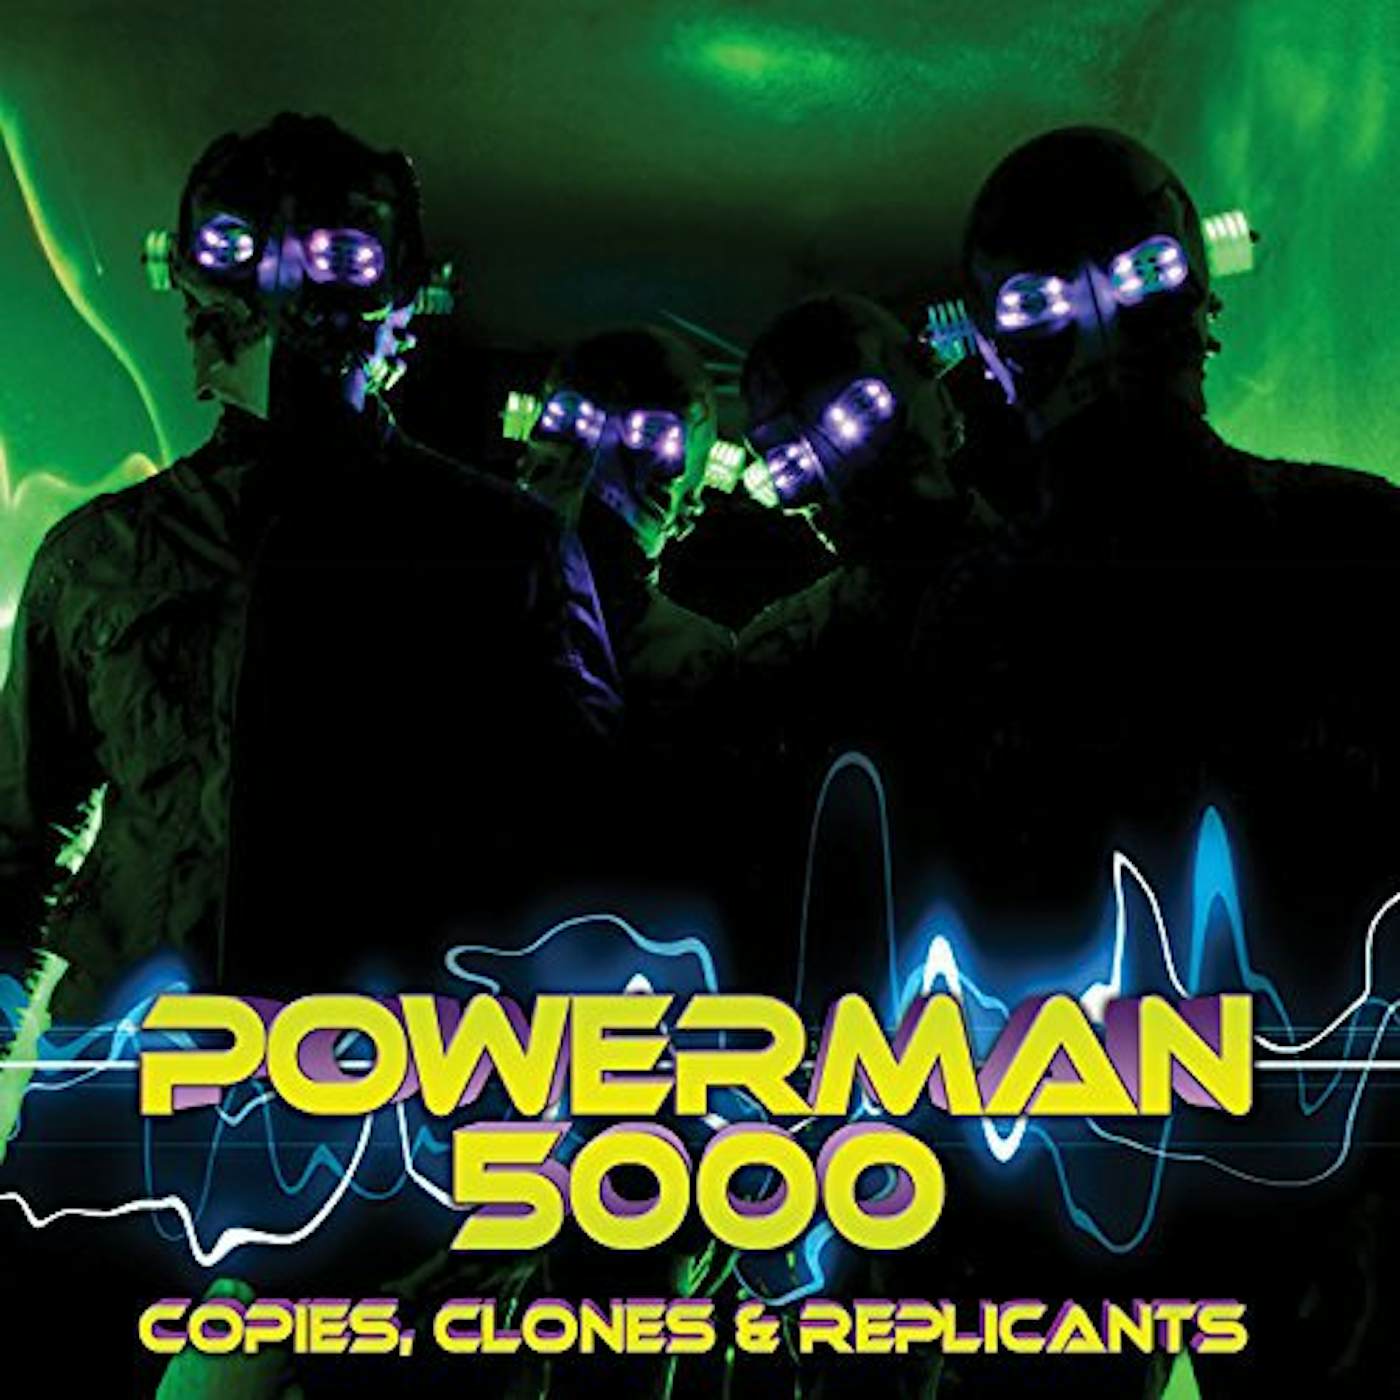 Powerman 5000 COPIES CLONES & REPLICANTS Vinyl Record